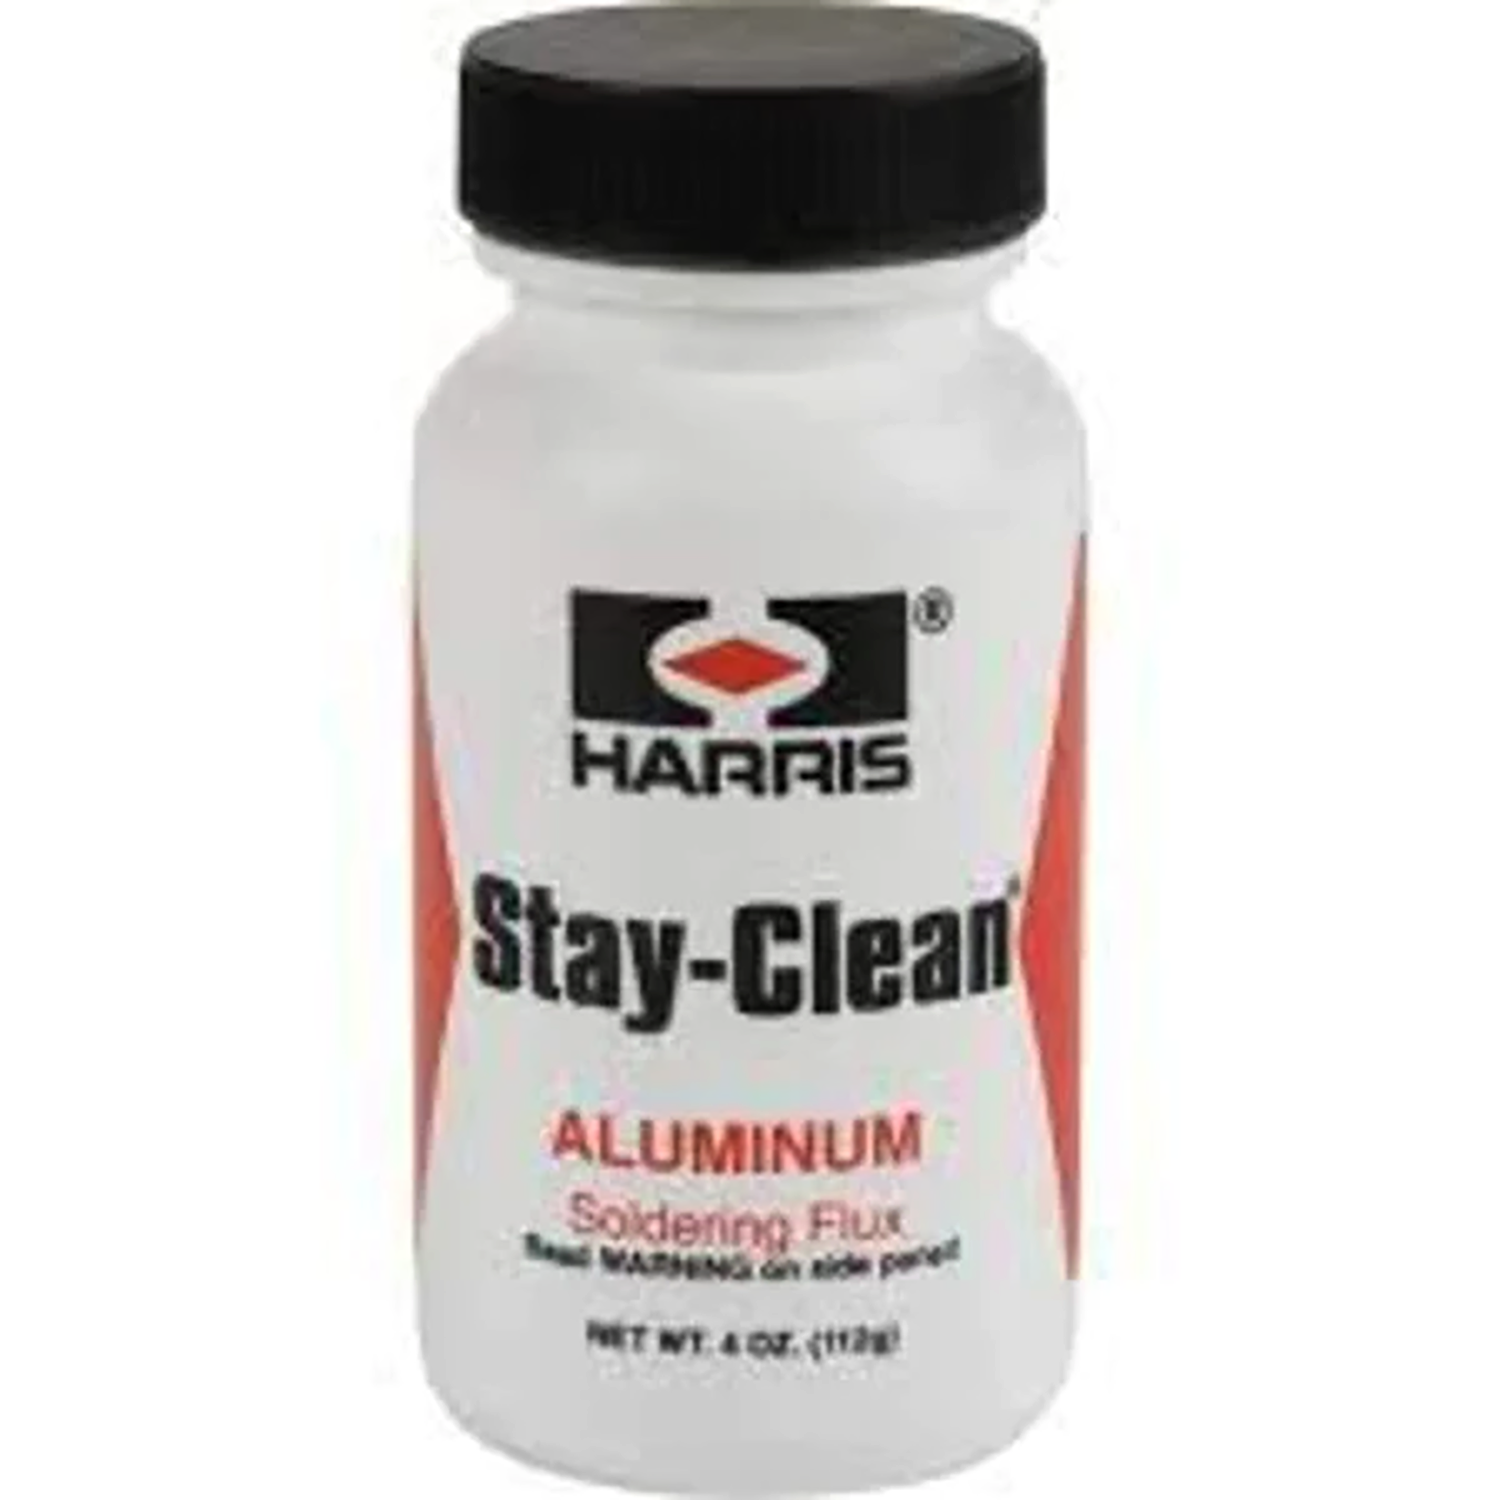 Harris Stay-Clean 1 Gallon Bottle Clear Liquid Soldering Flux SCLF1G